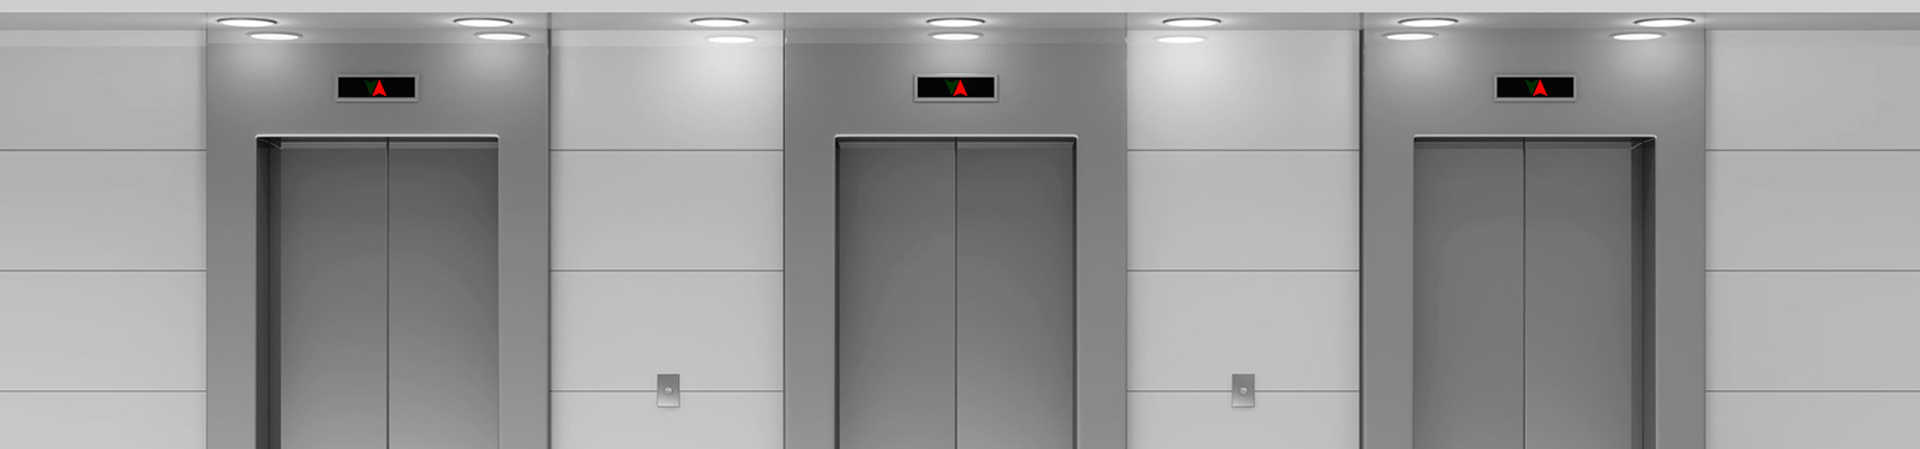 Mantenimiento elevador